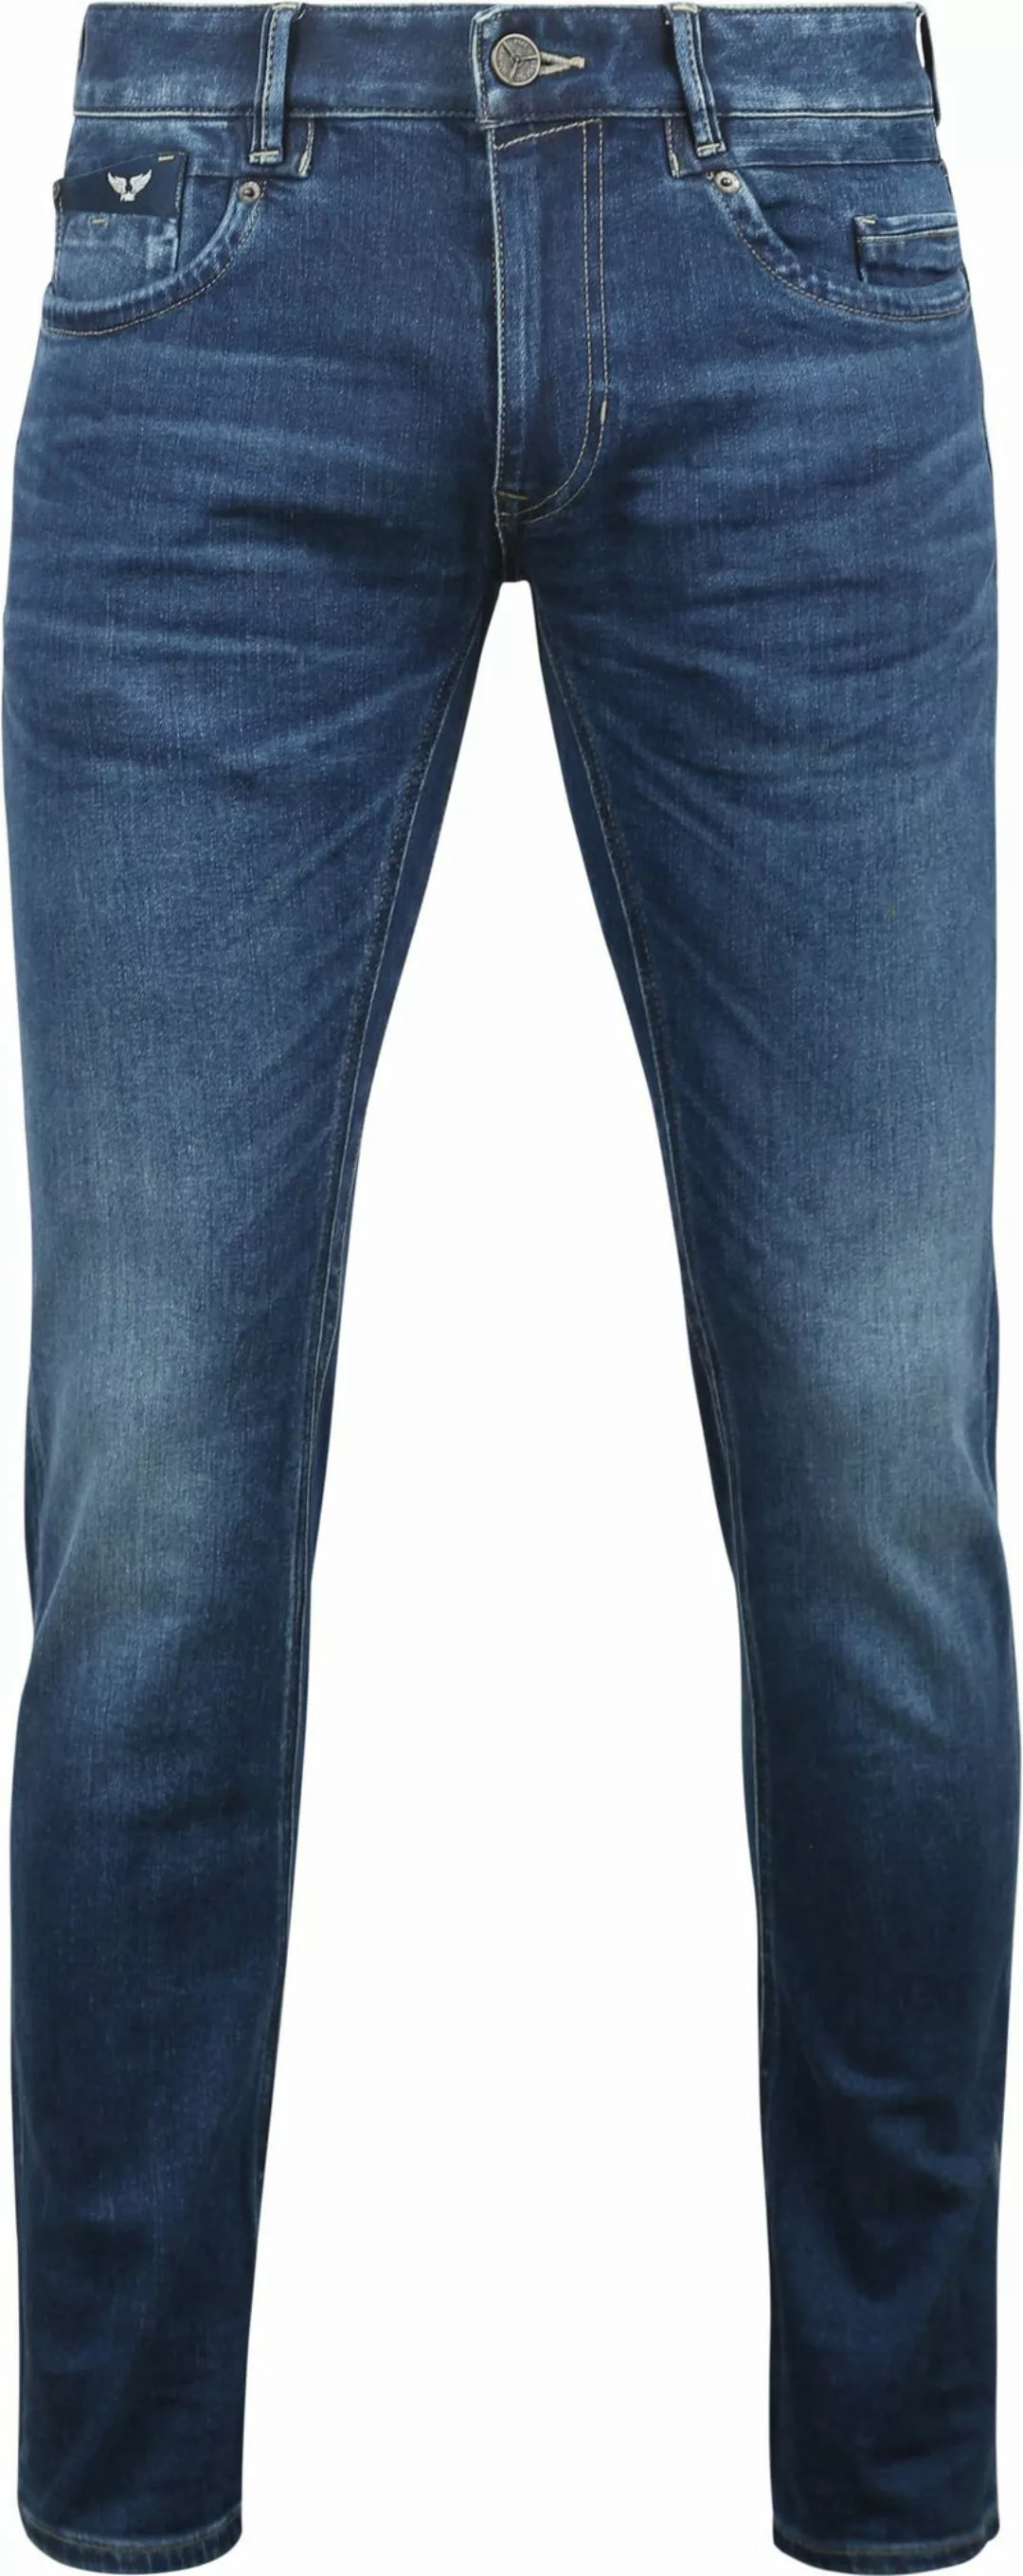 PME Legend Commander 3.0 Jeans Blau TBM - Größe W 31 - L 32 günstig online kaufen